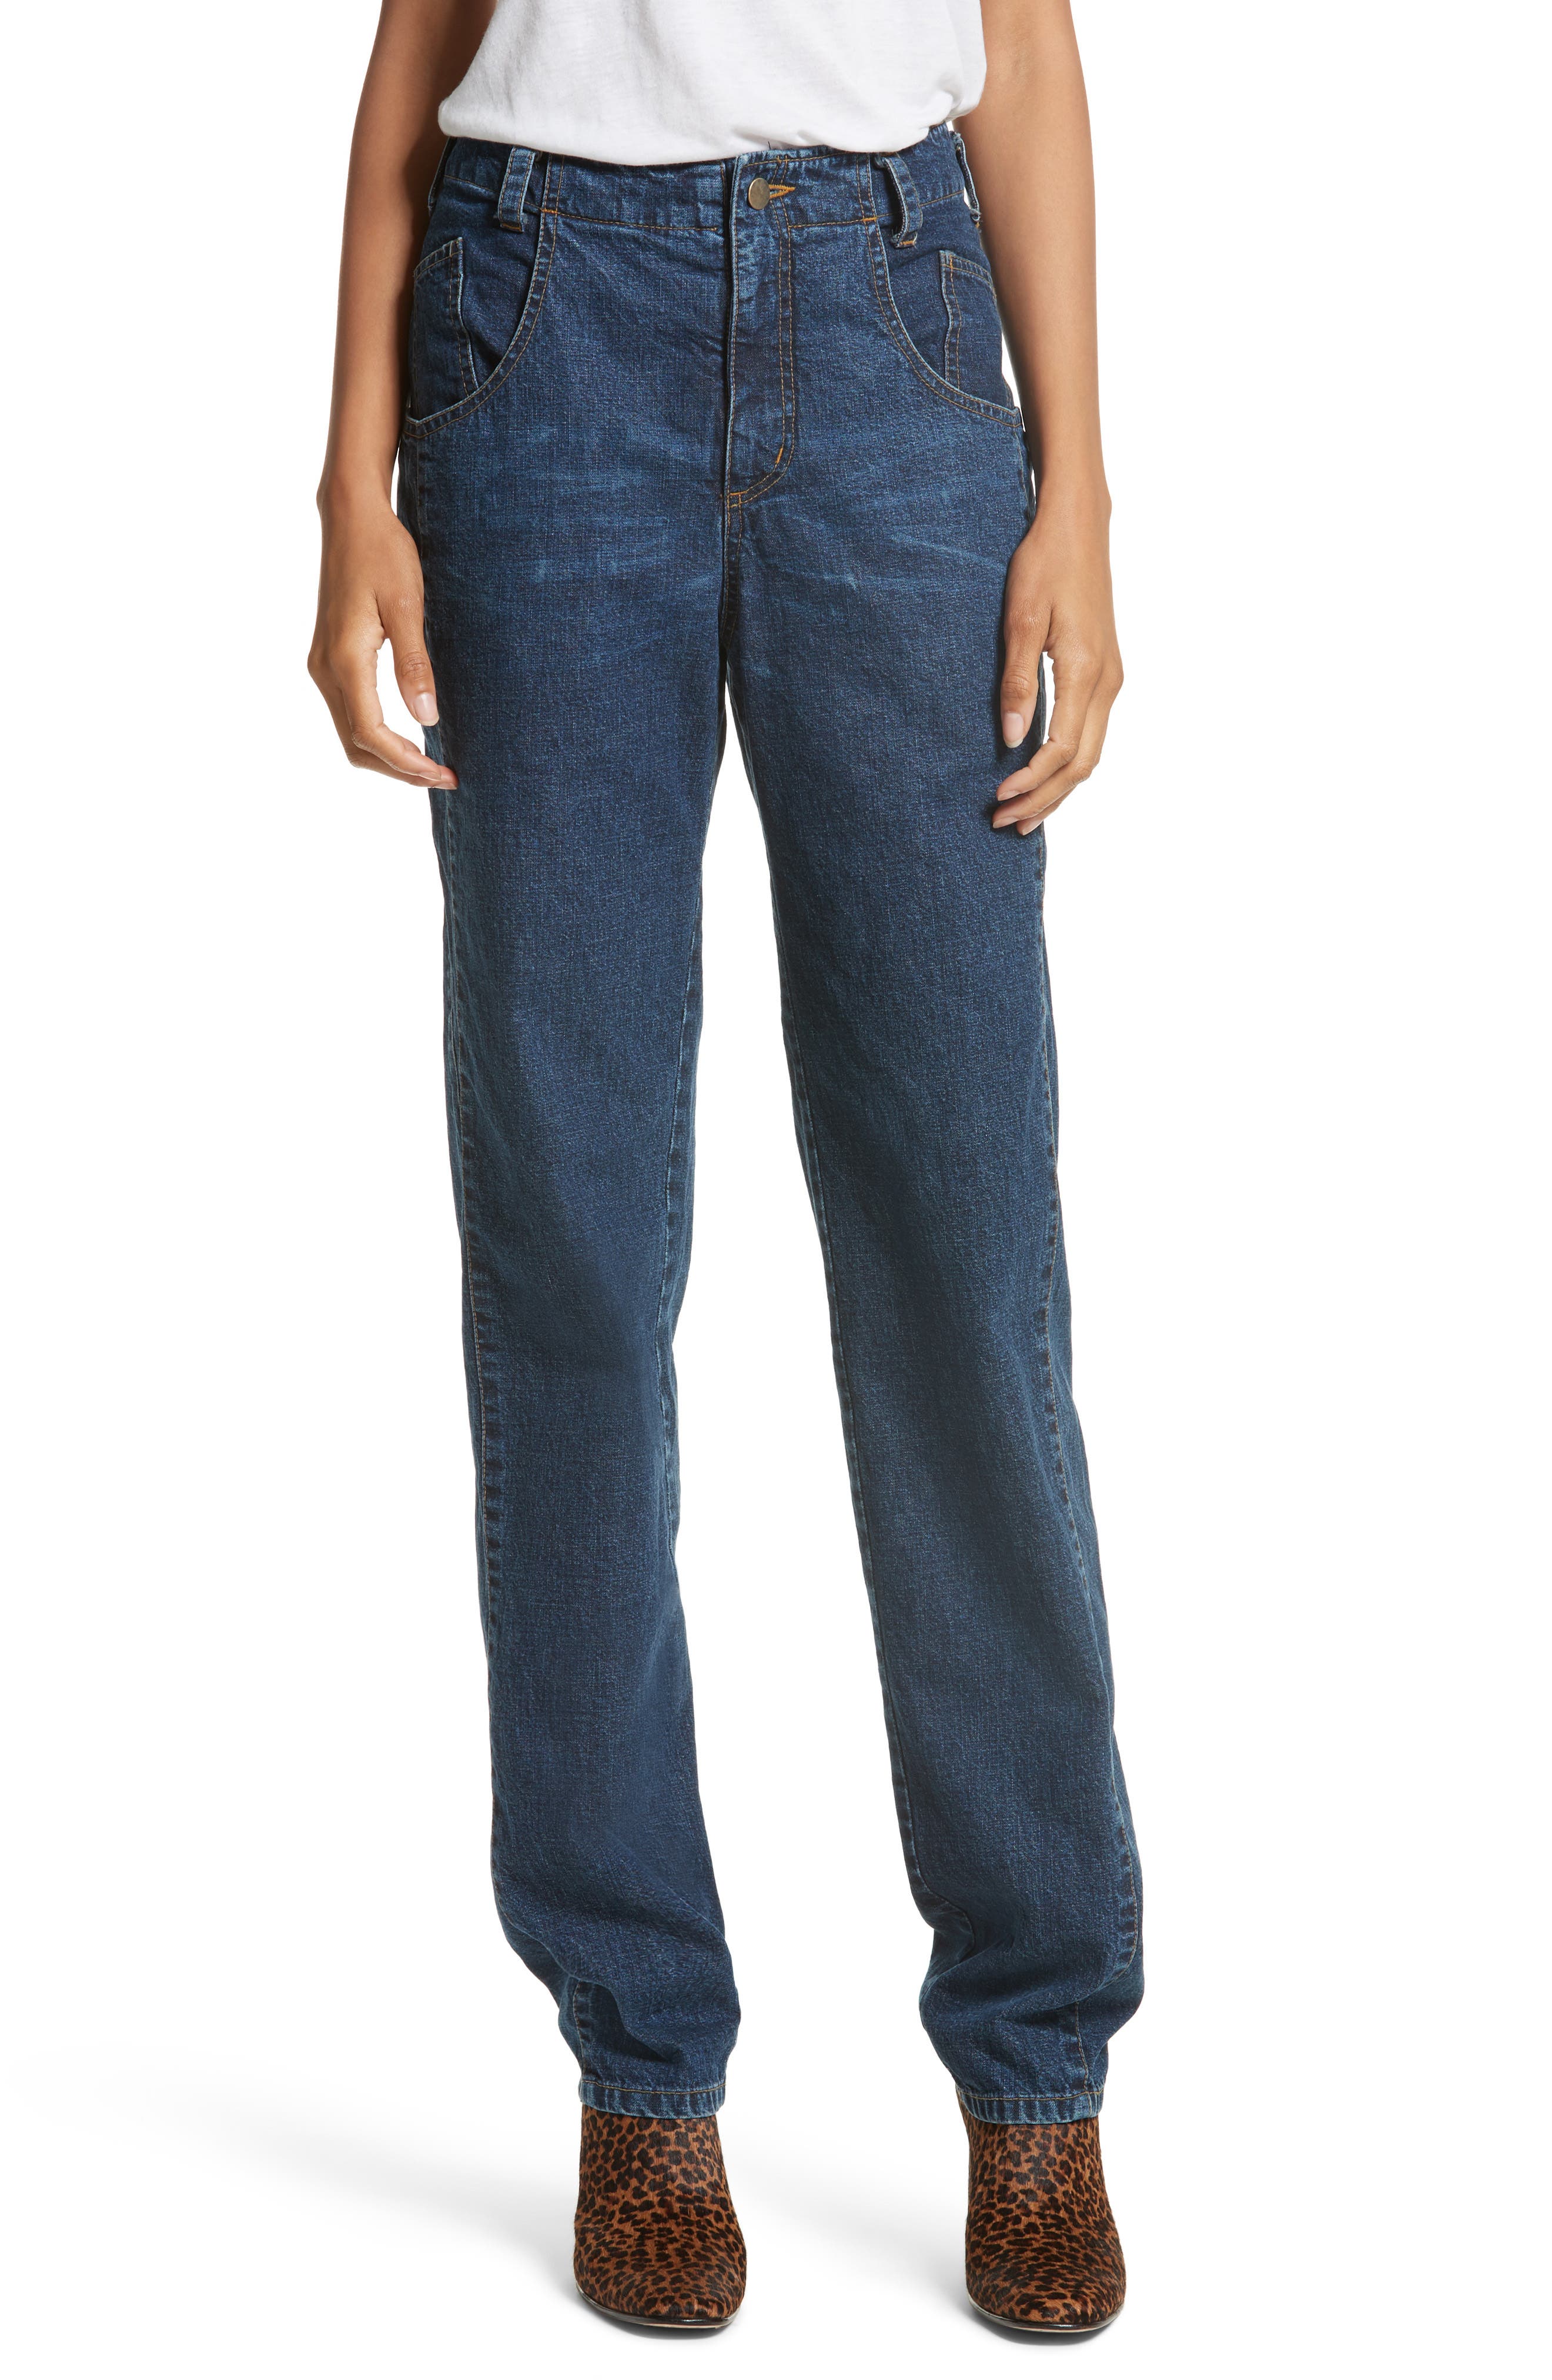 rachel comey jeans sale